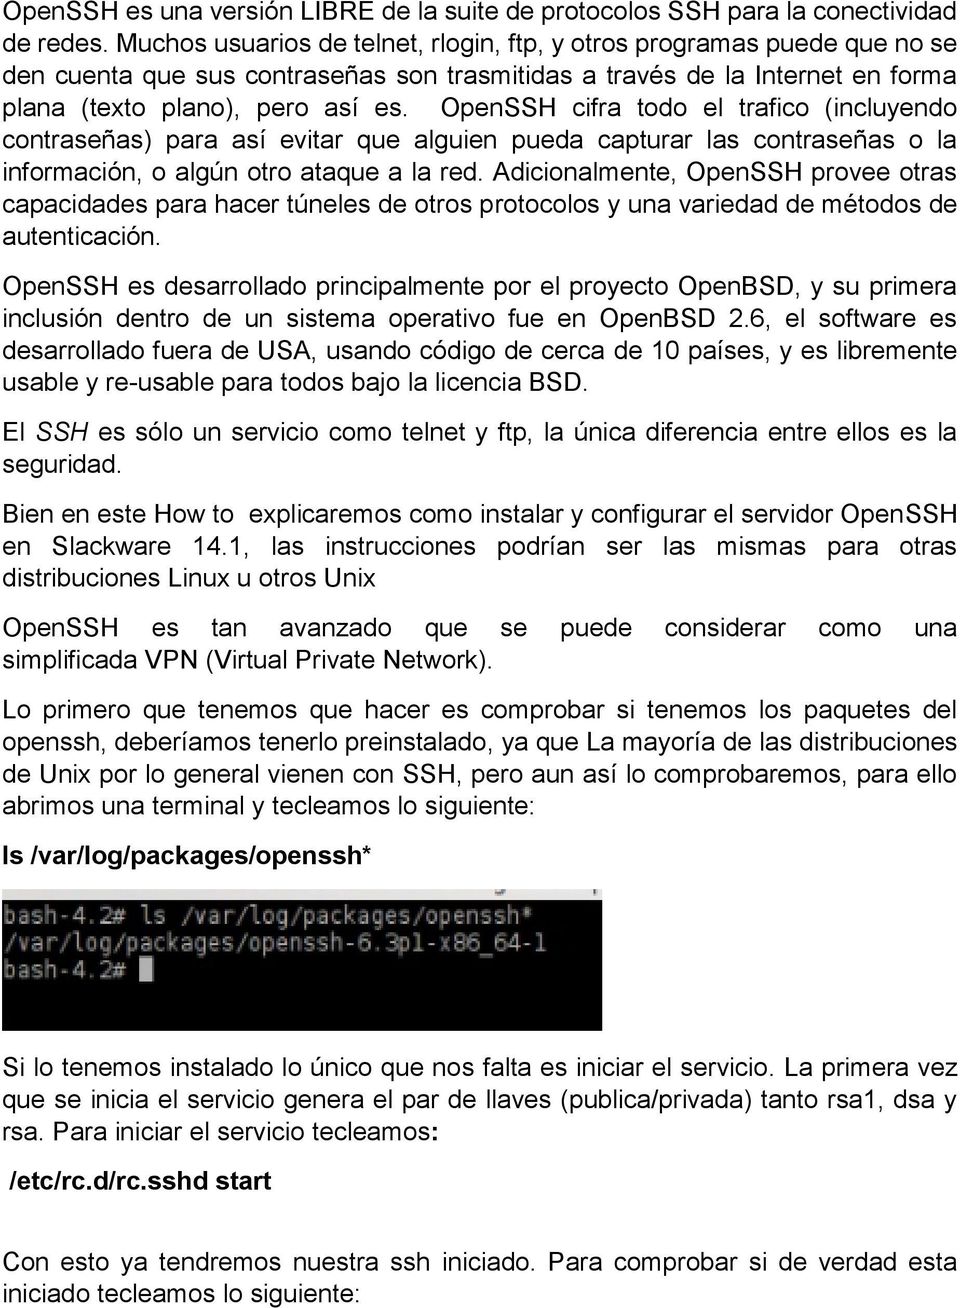 OpenSSH cifra todo el trafico (incluyendo contraseñas) para así evitar que alguien pueda capturar las contraseñas o la información, o algún otro ataque a la red.